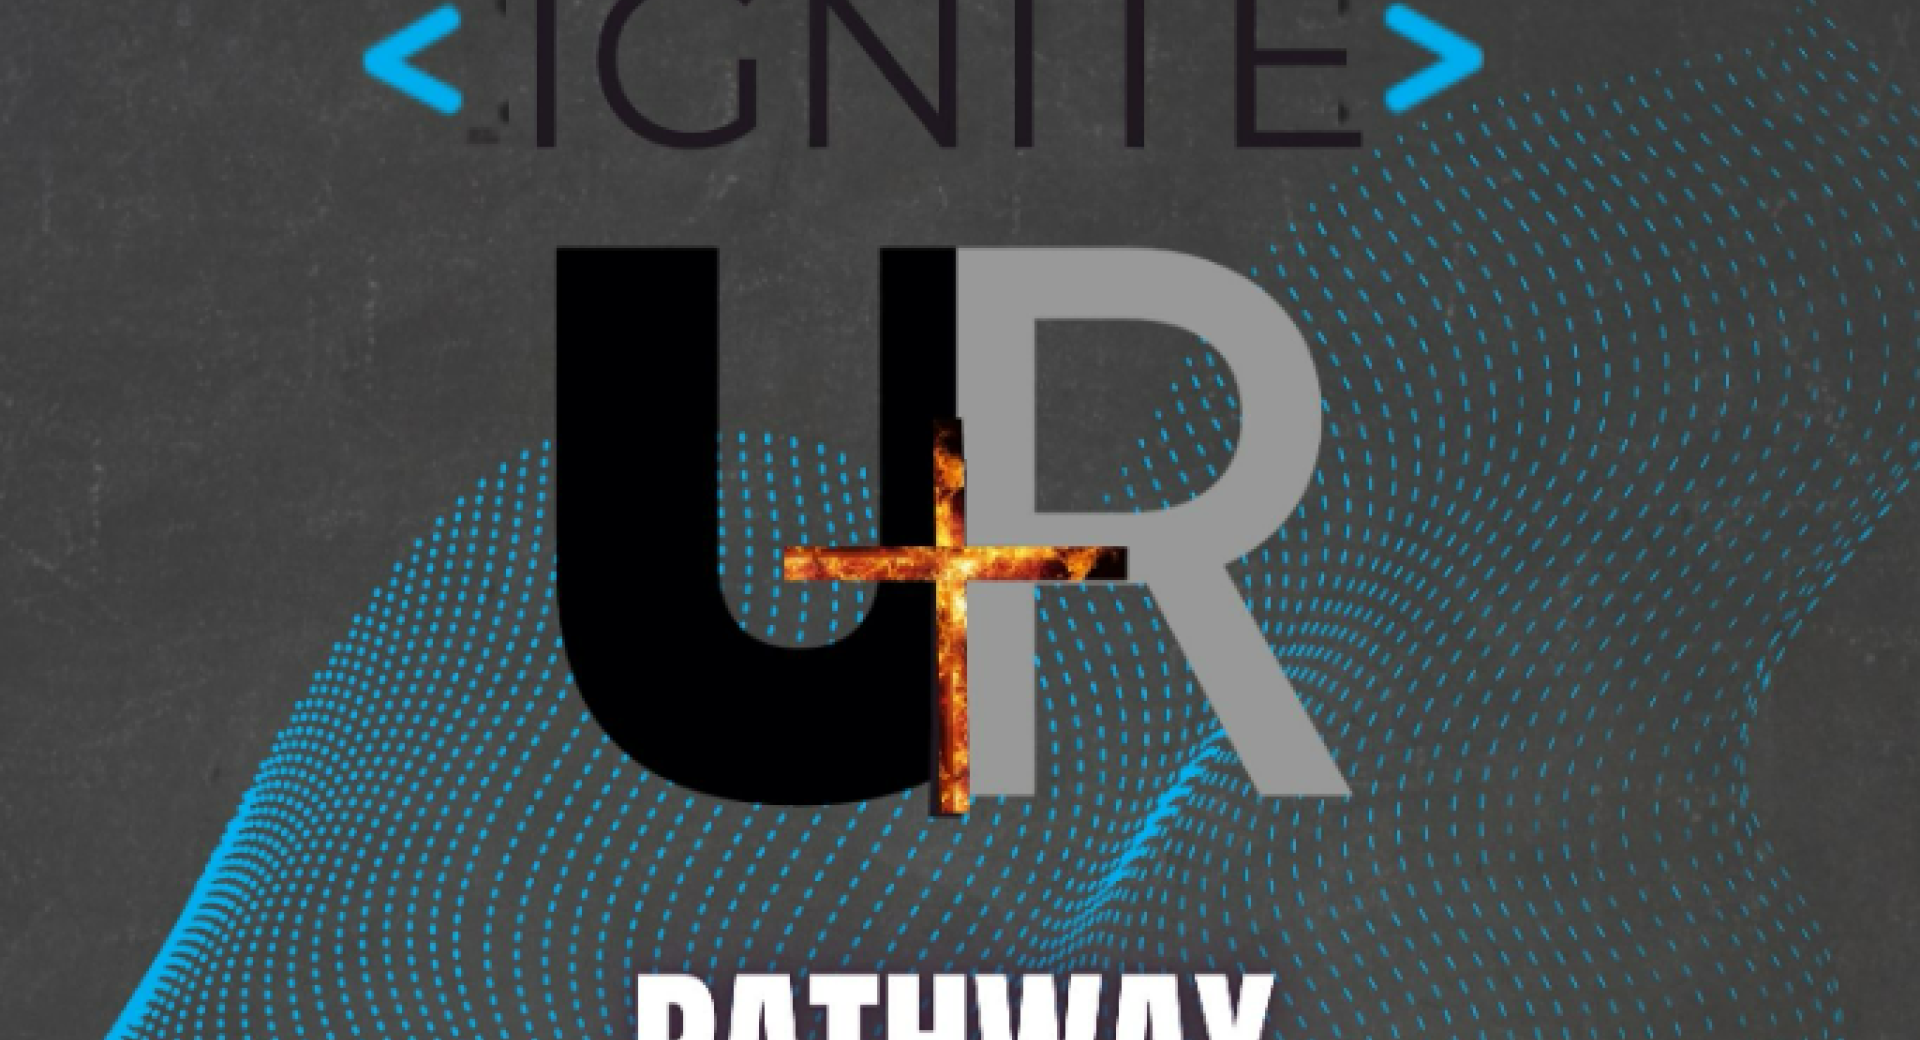 Unity Ridge and IGNITE Pathways Establish Partnership